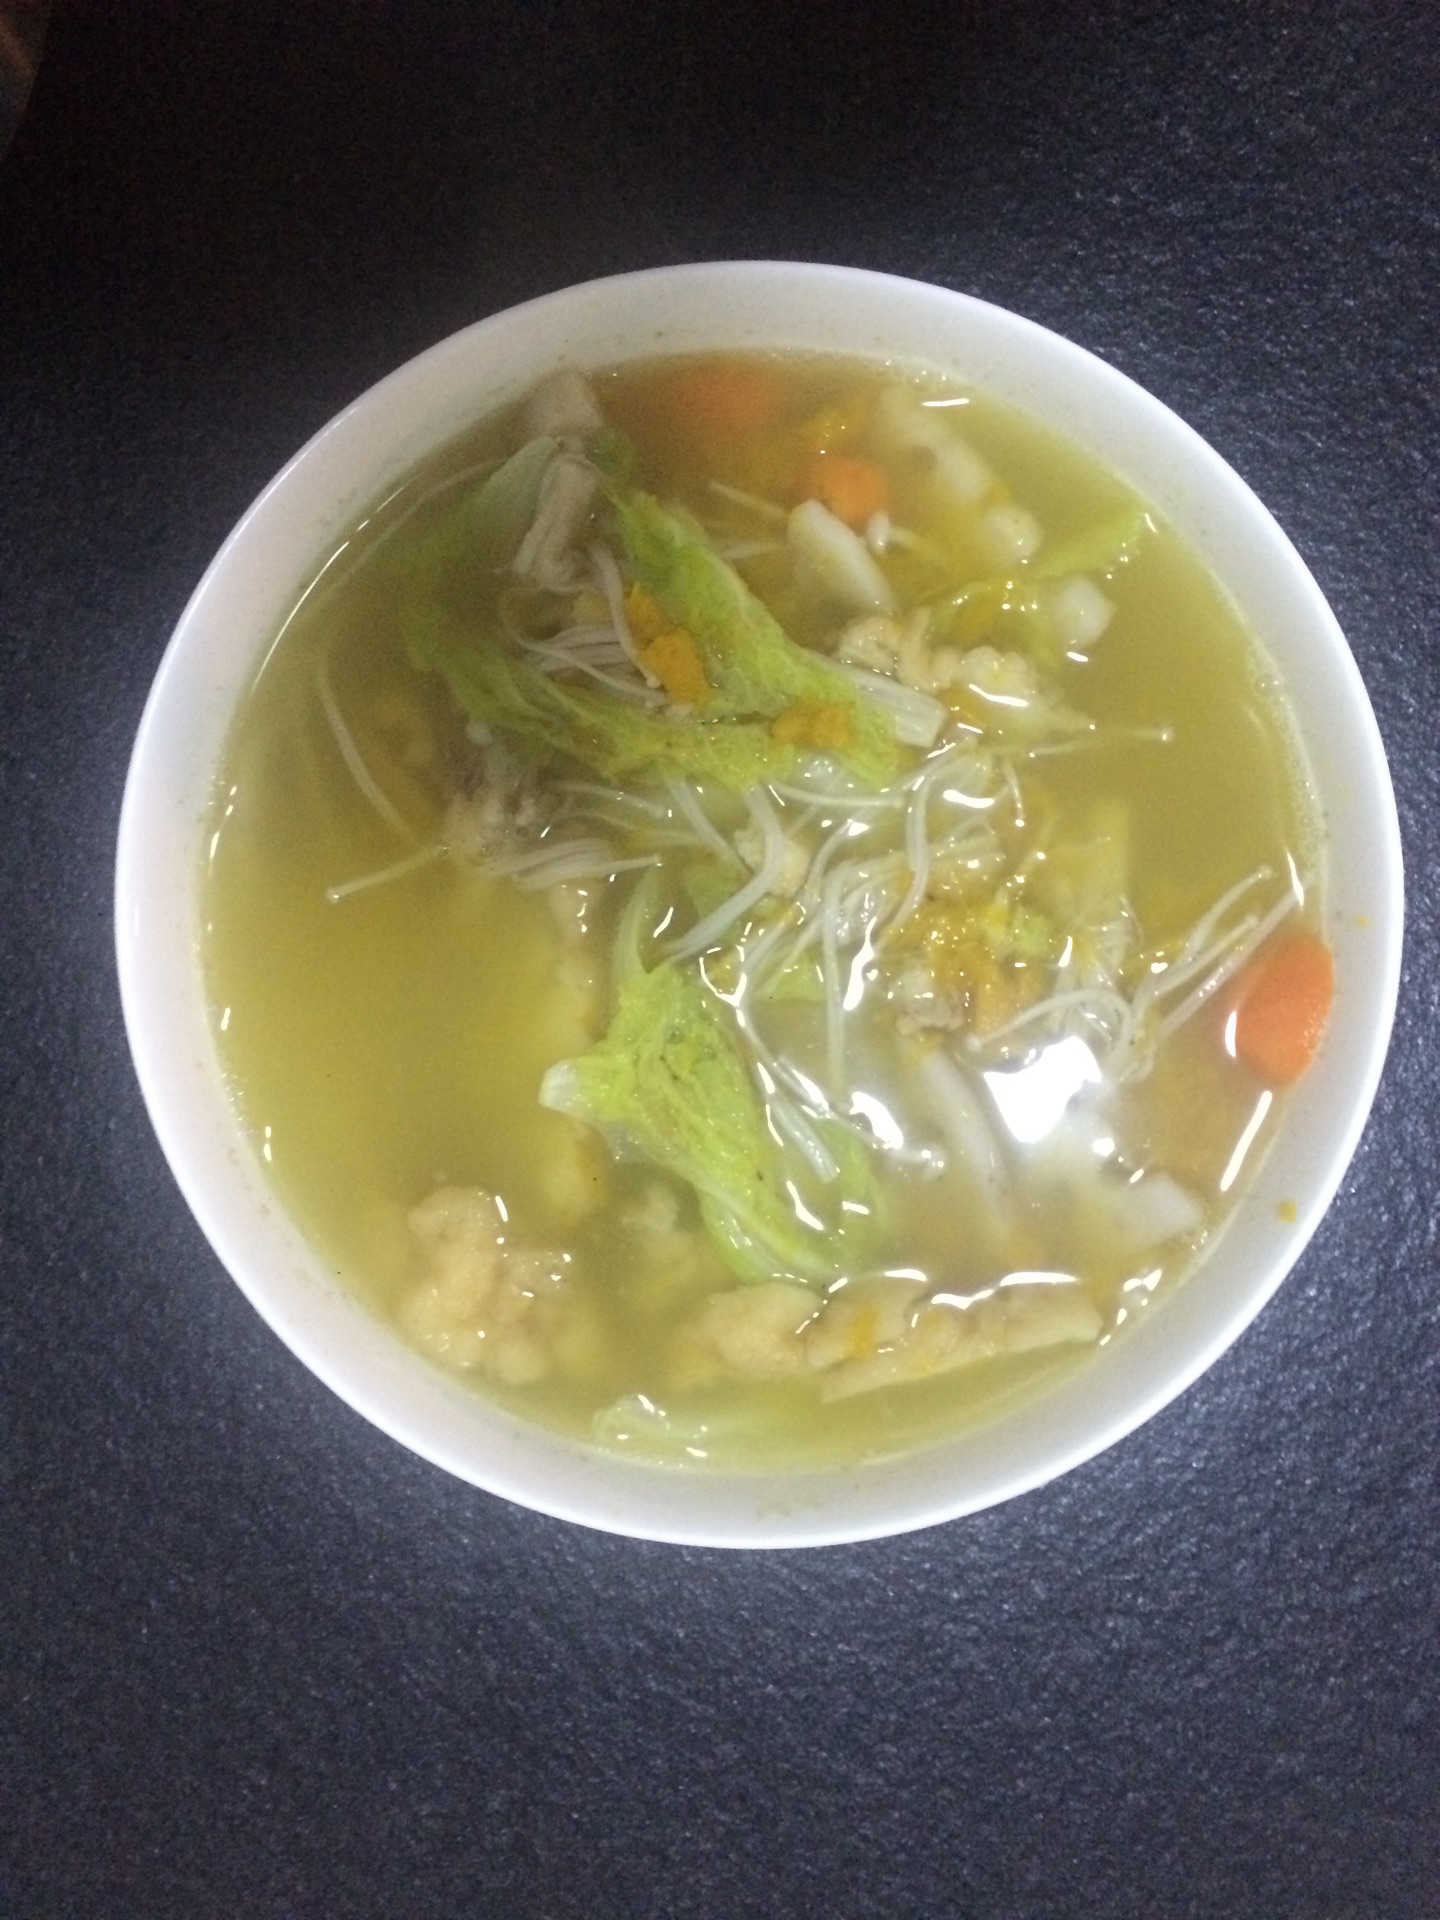 蔬菜汤怎么做_蔬菜汤的做法_豆果美食